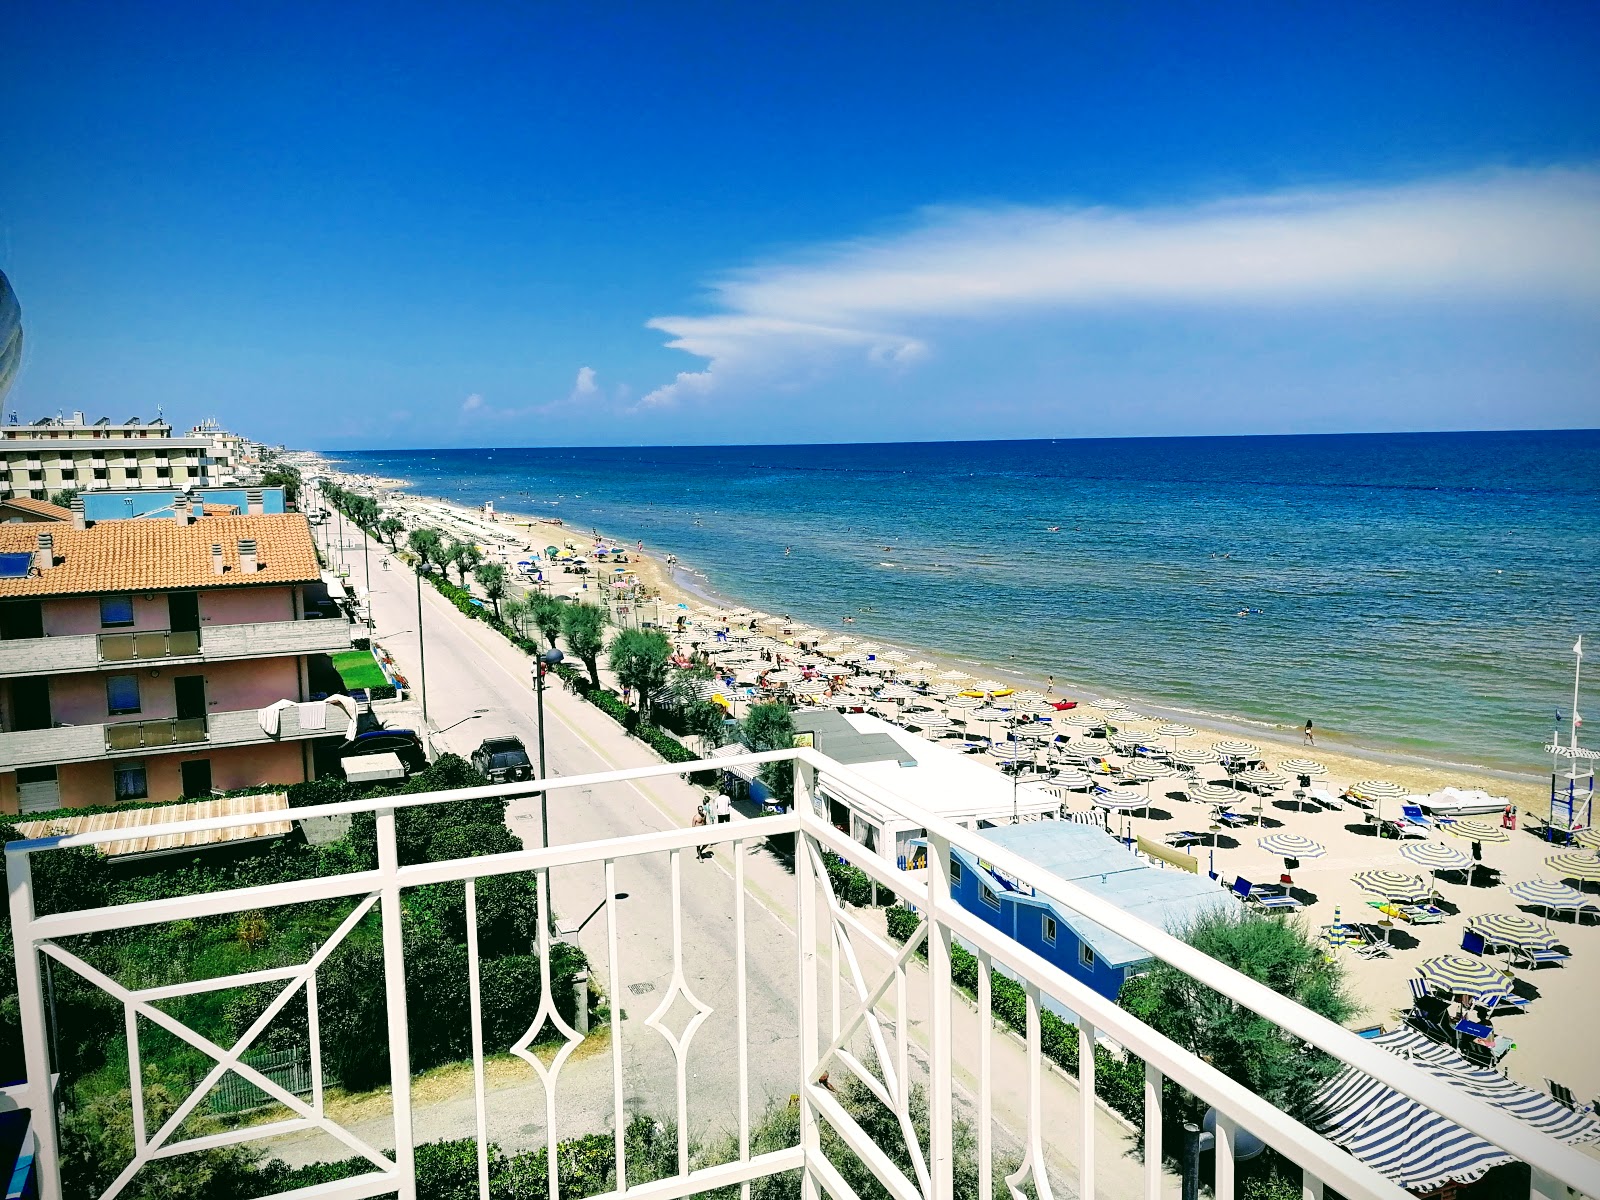 Zdjęcie Marotta beach - popularne miejsce wśród znawców relaksu